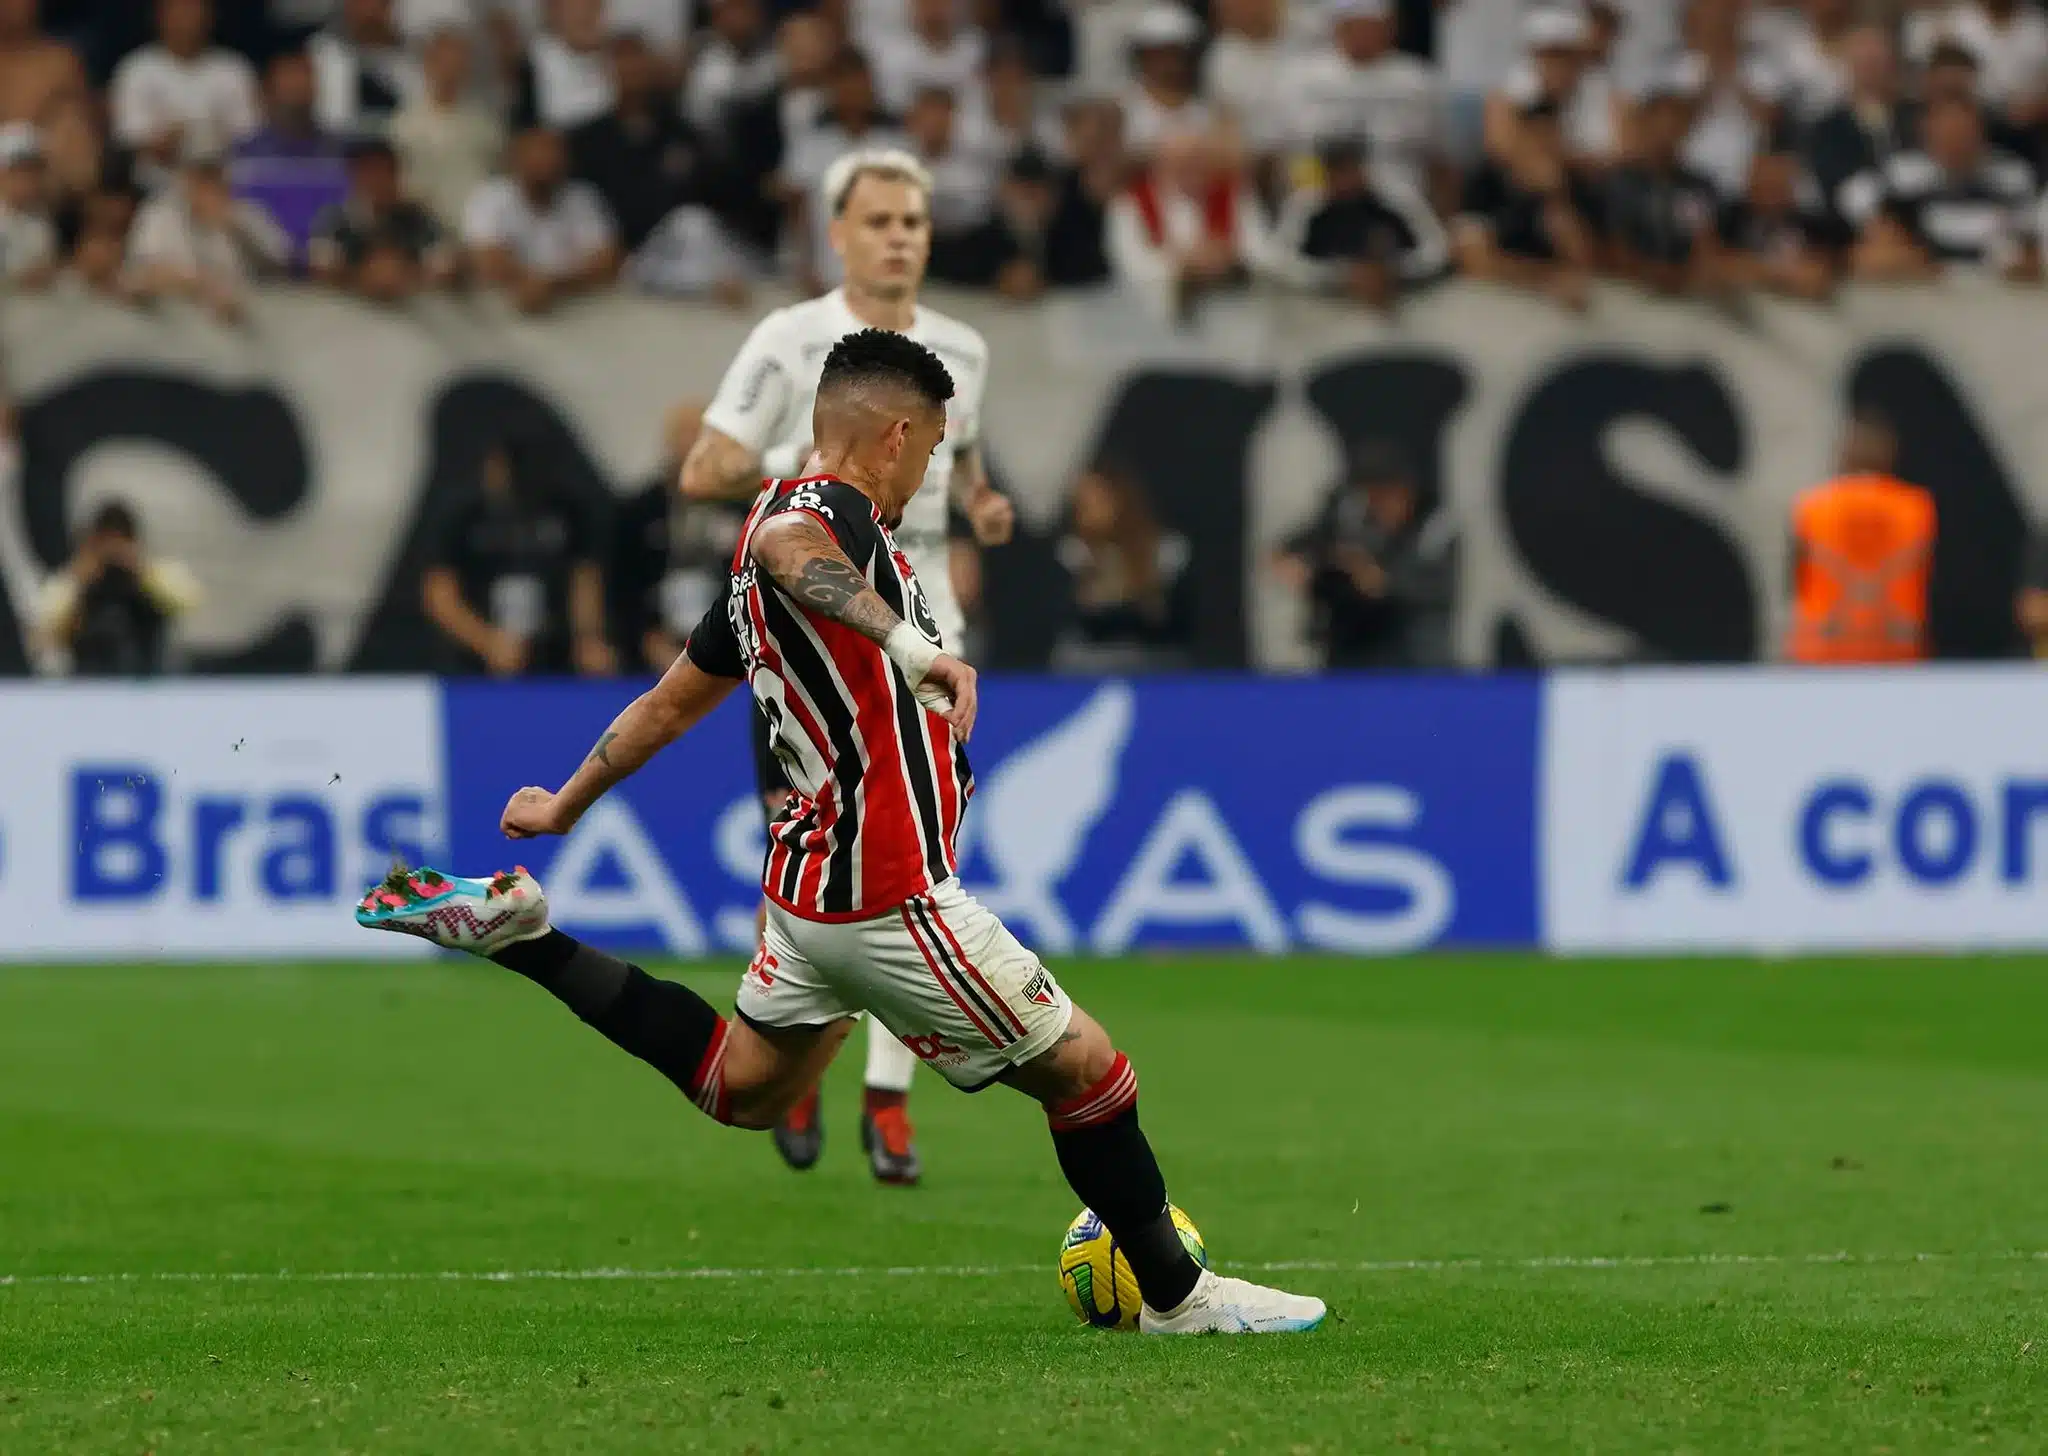 Desfalque importante: Luciano não disputará jogo de volta contra o Corinthians